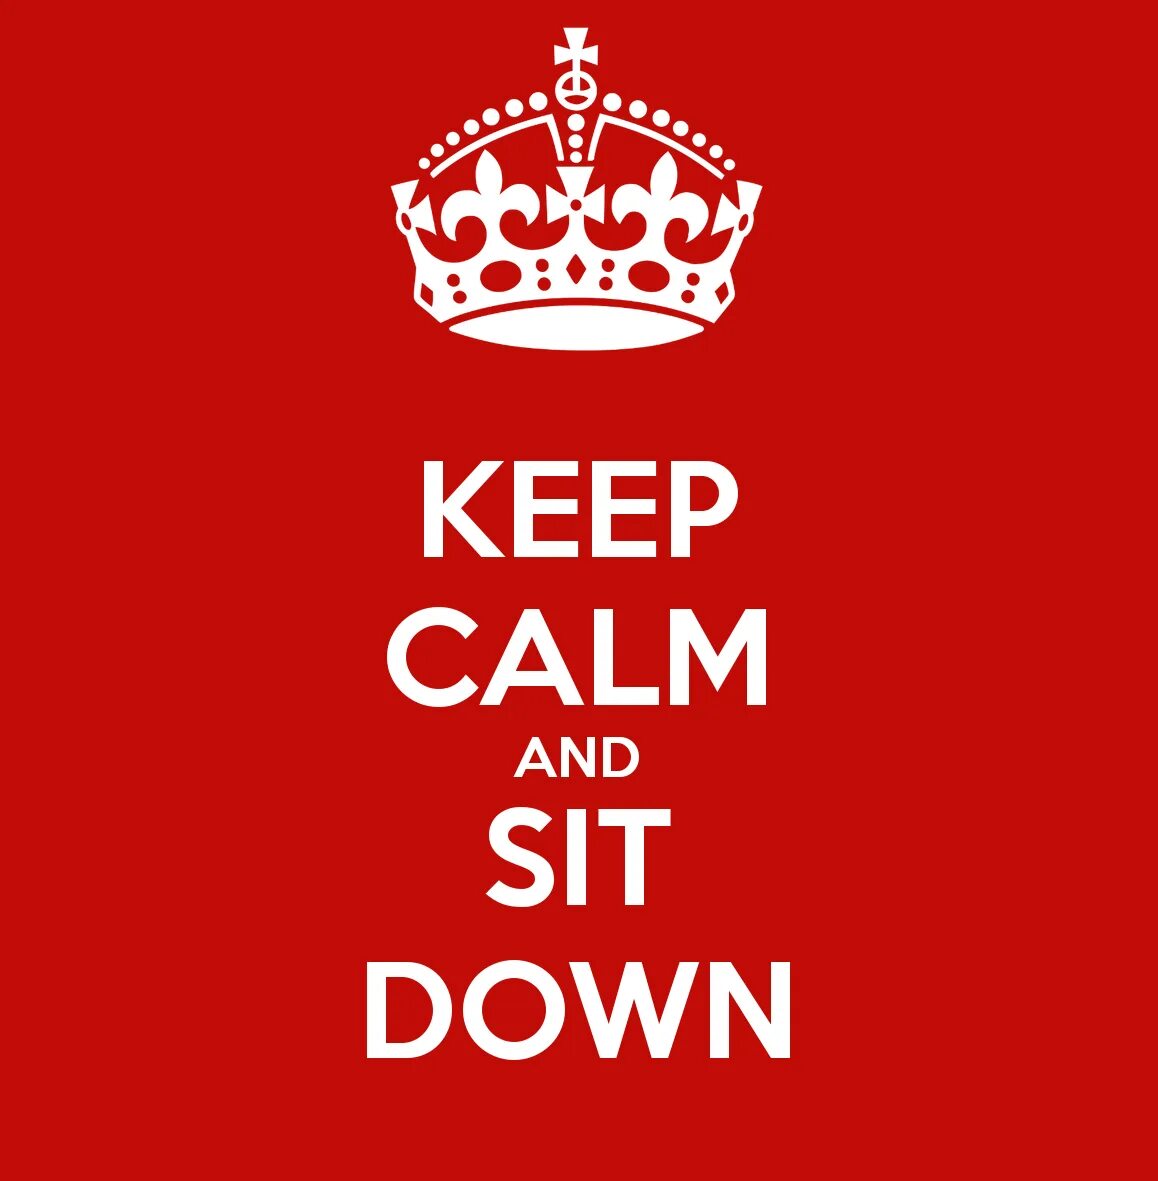 Calm down and keep. Keep Calm and sit down. Calm down Calm down. Keep Calm мемы.